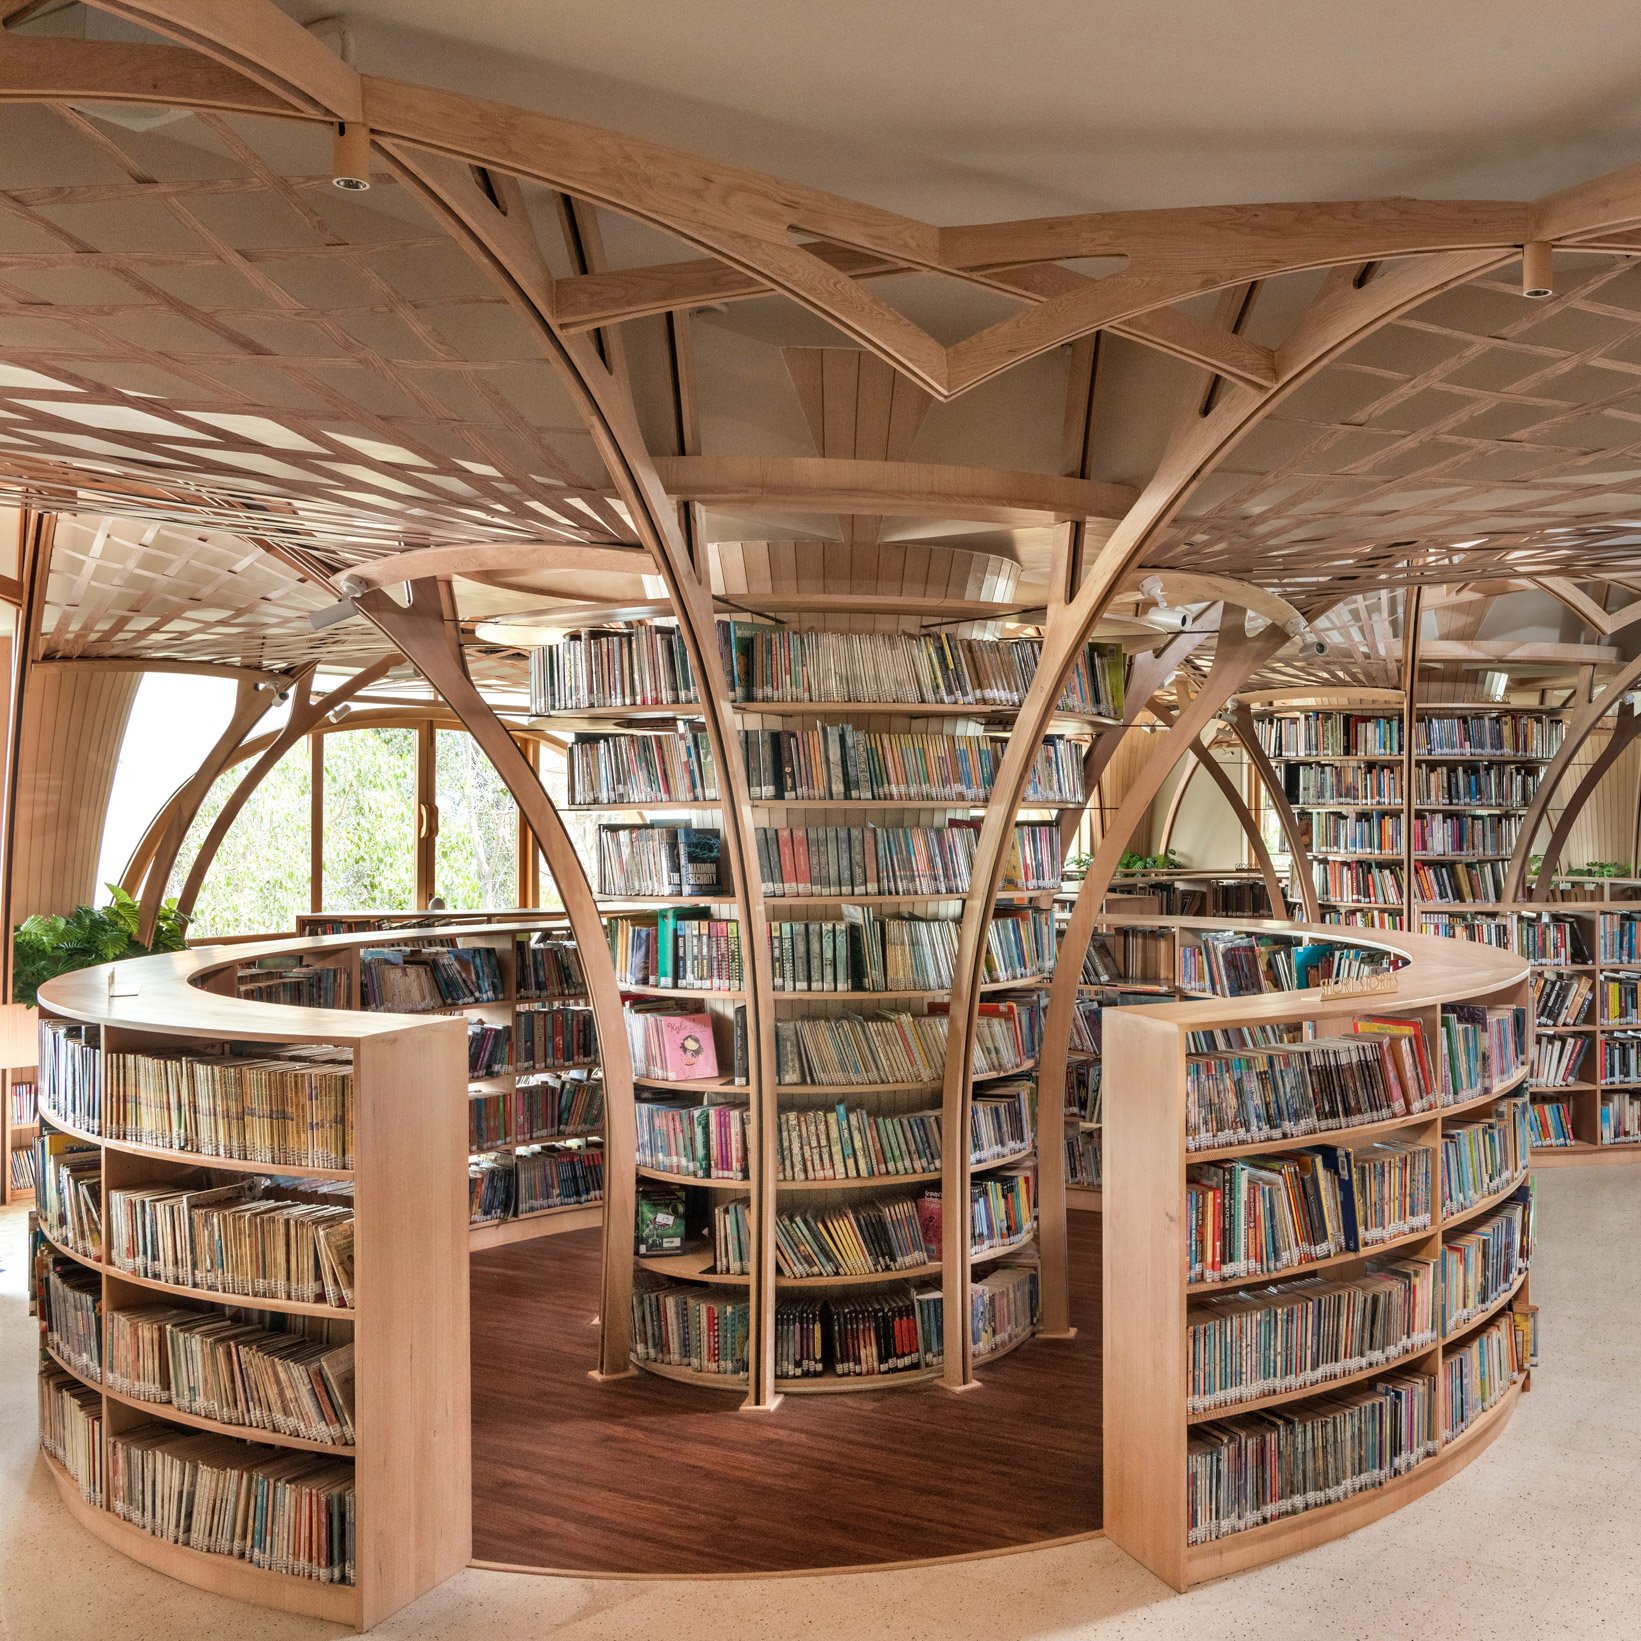 Studio Hinge создает библиотечные пространства под древовидными деревянными колоннами